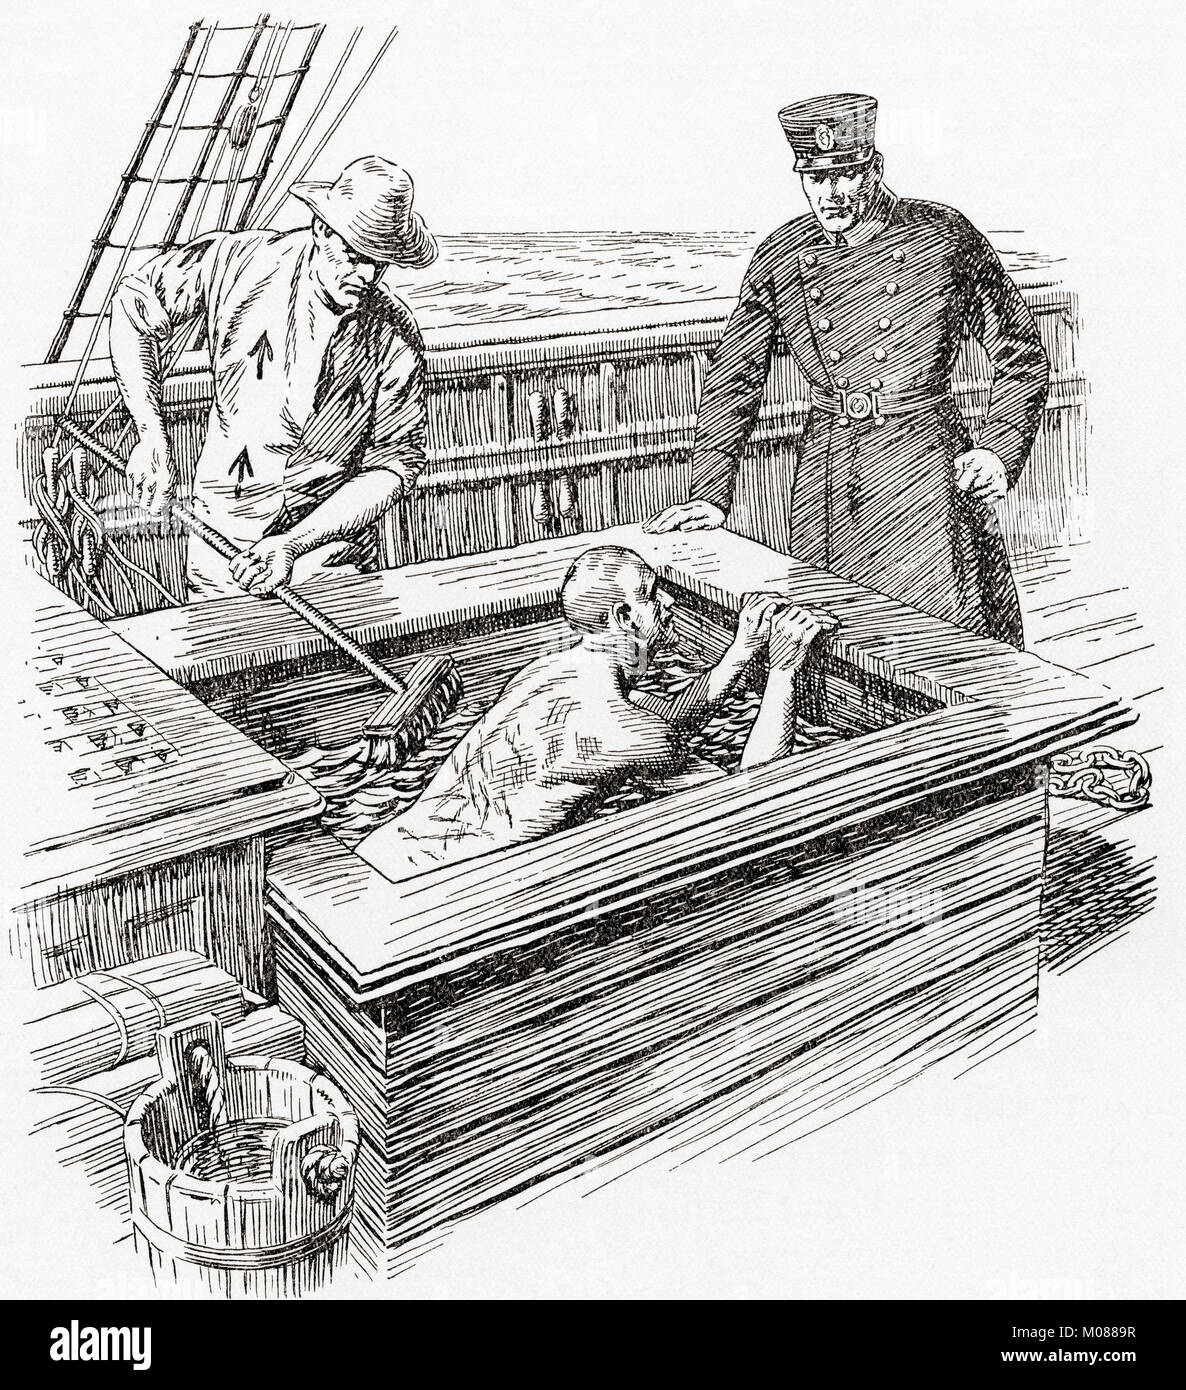 Das Solebad an Bord ein Gefängnis hulk im frühen 19. Jahrhundert. Das Solebad aka Sarg Badewanne war, wo die Gefangenen nach ausgepeitscht werden, ihren Rückseiten waren scubbed mit Salzwasser schrecklich Leiden verursacht wurden. Die Märtyrer von Tolpuddle, veröffentlicht 1934. Stockfoto